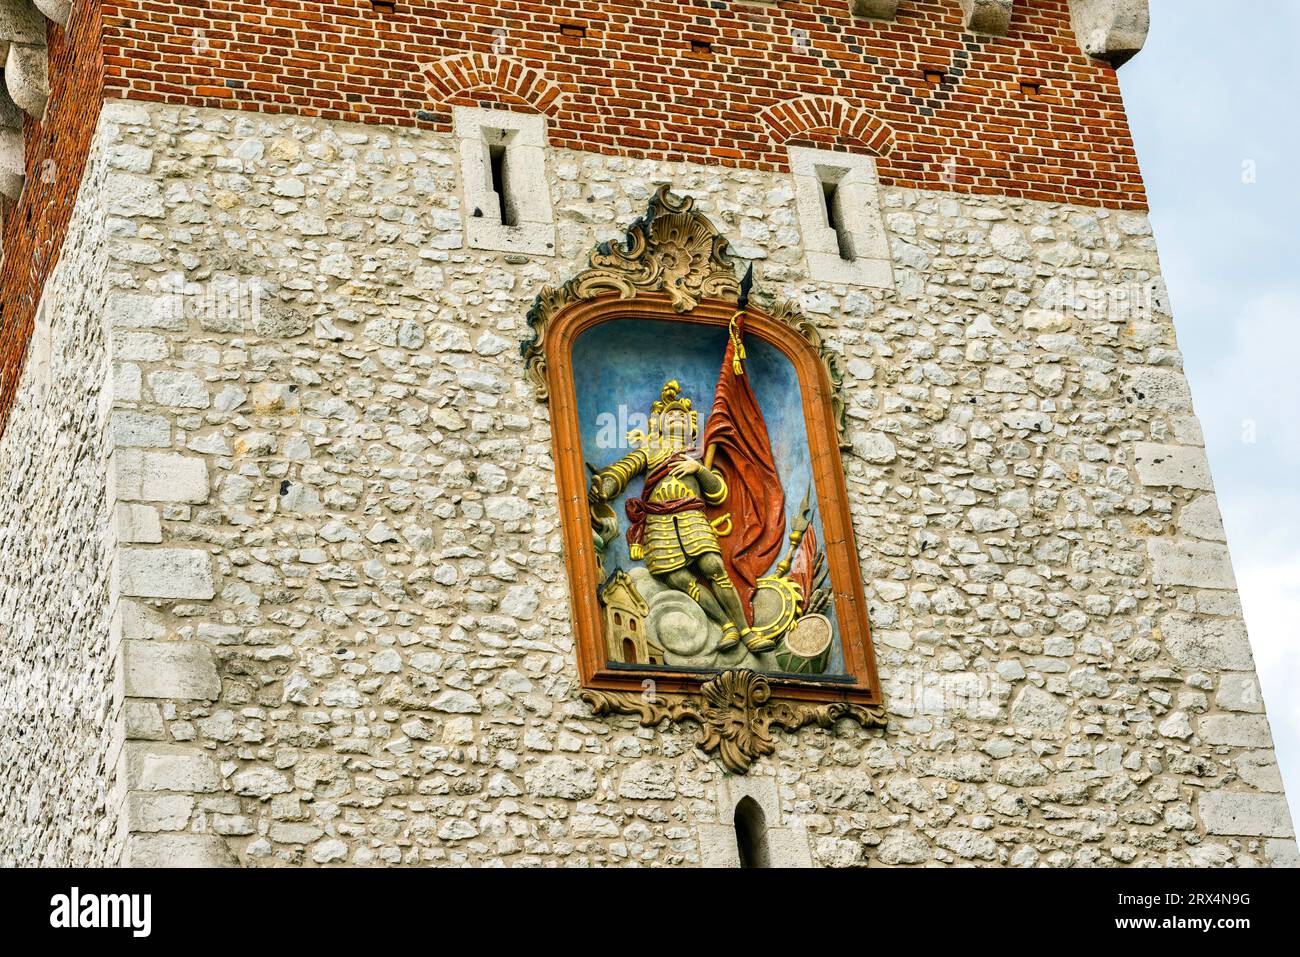 Rilievo barocco raffigurante San Florian sulla Florian Tower. Questo santo è il santo patrono di Cracovia e protettore della città dagli incendi. Foto Stock